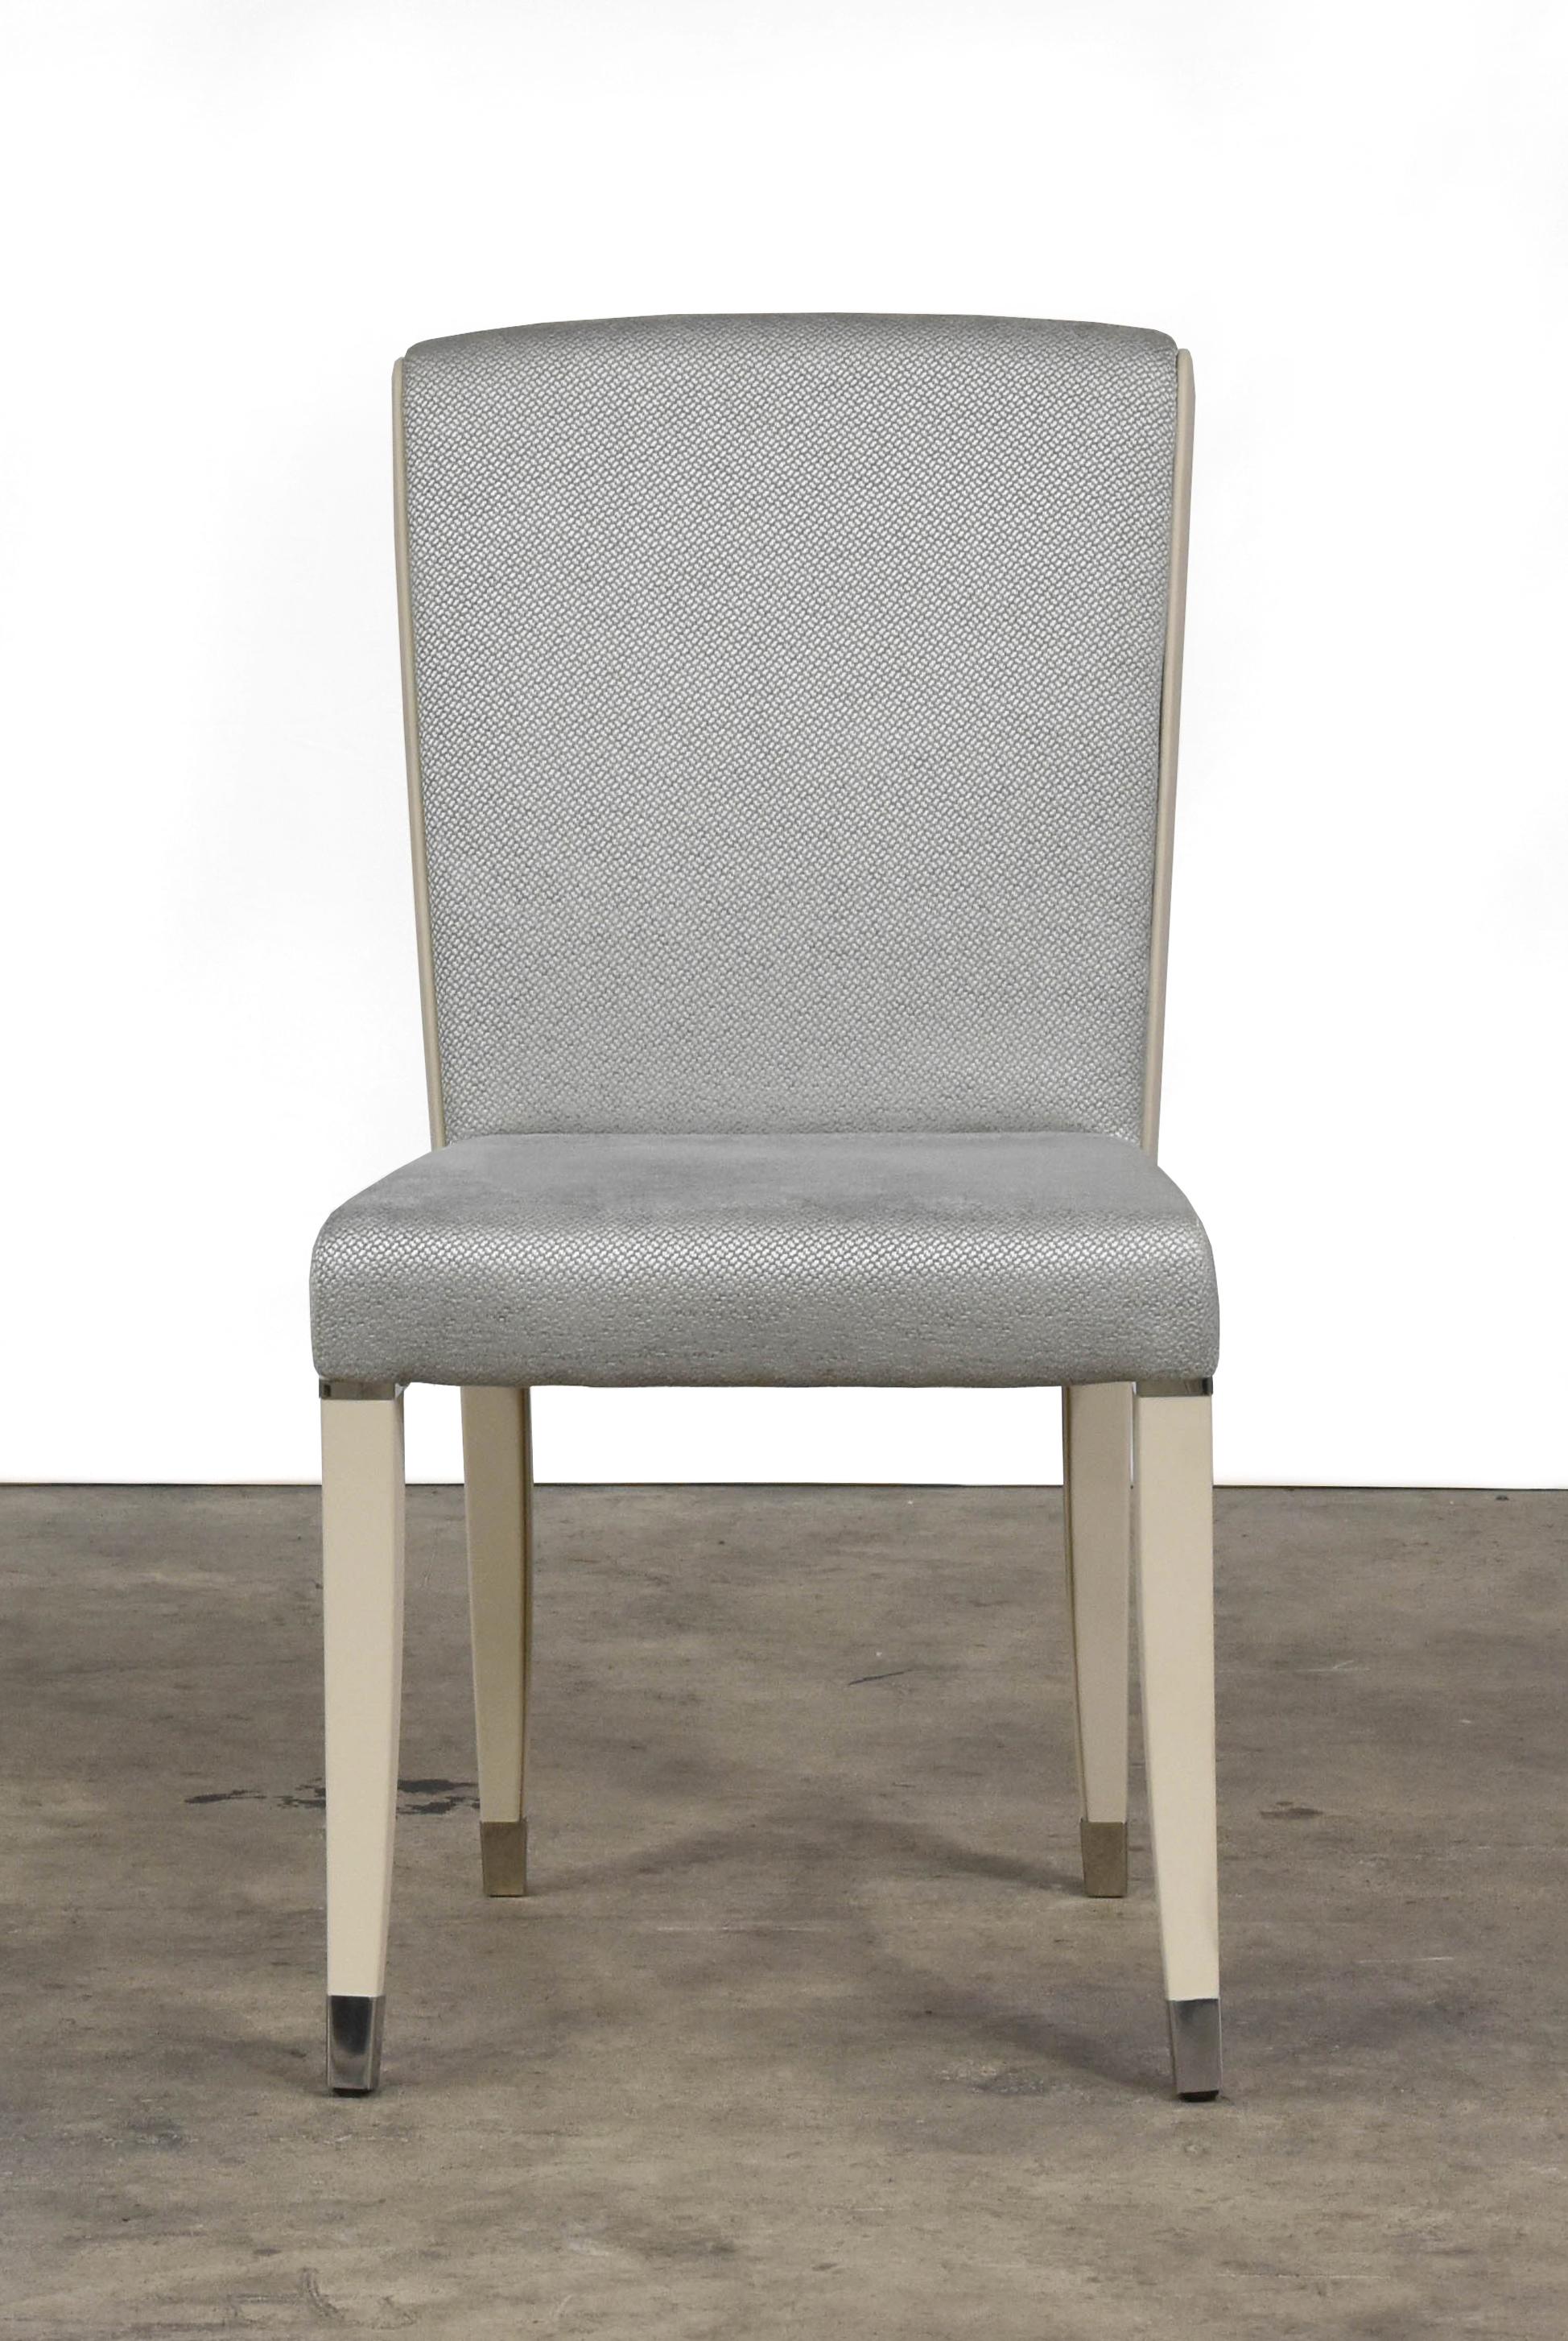 La chaise Aline est une option élégante recouverte de tissu bleu glacier avec profil et pieds en cuir ivoire. La chaise et les pieds présentent des accents en acier inoxydable.
 